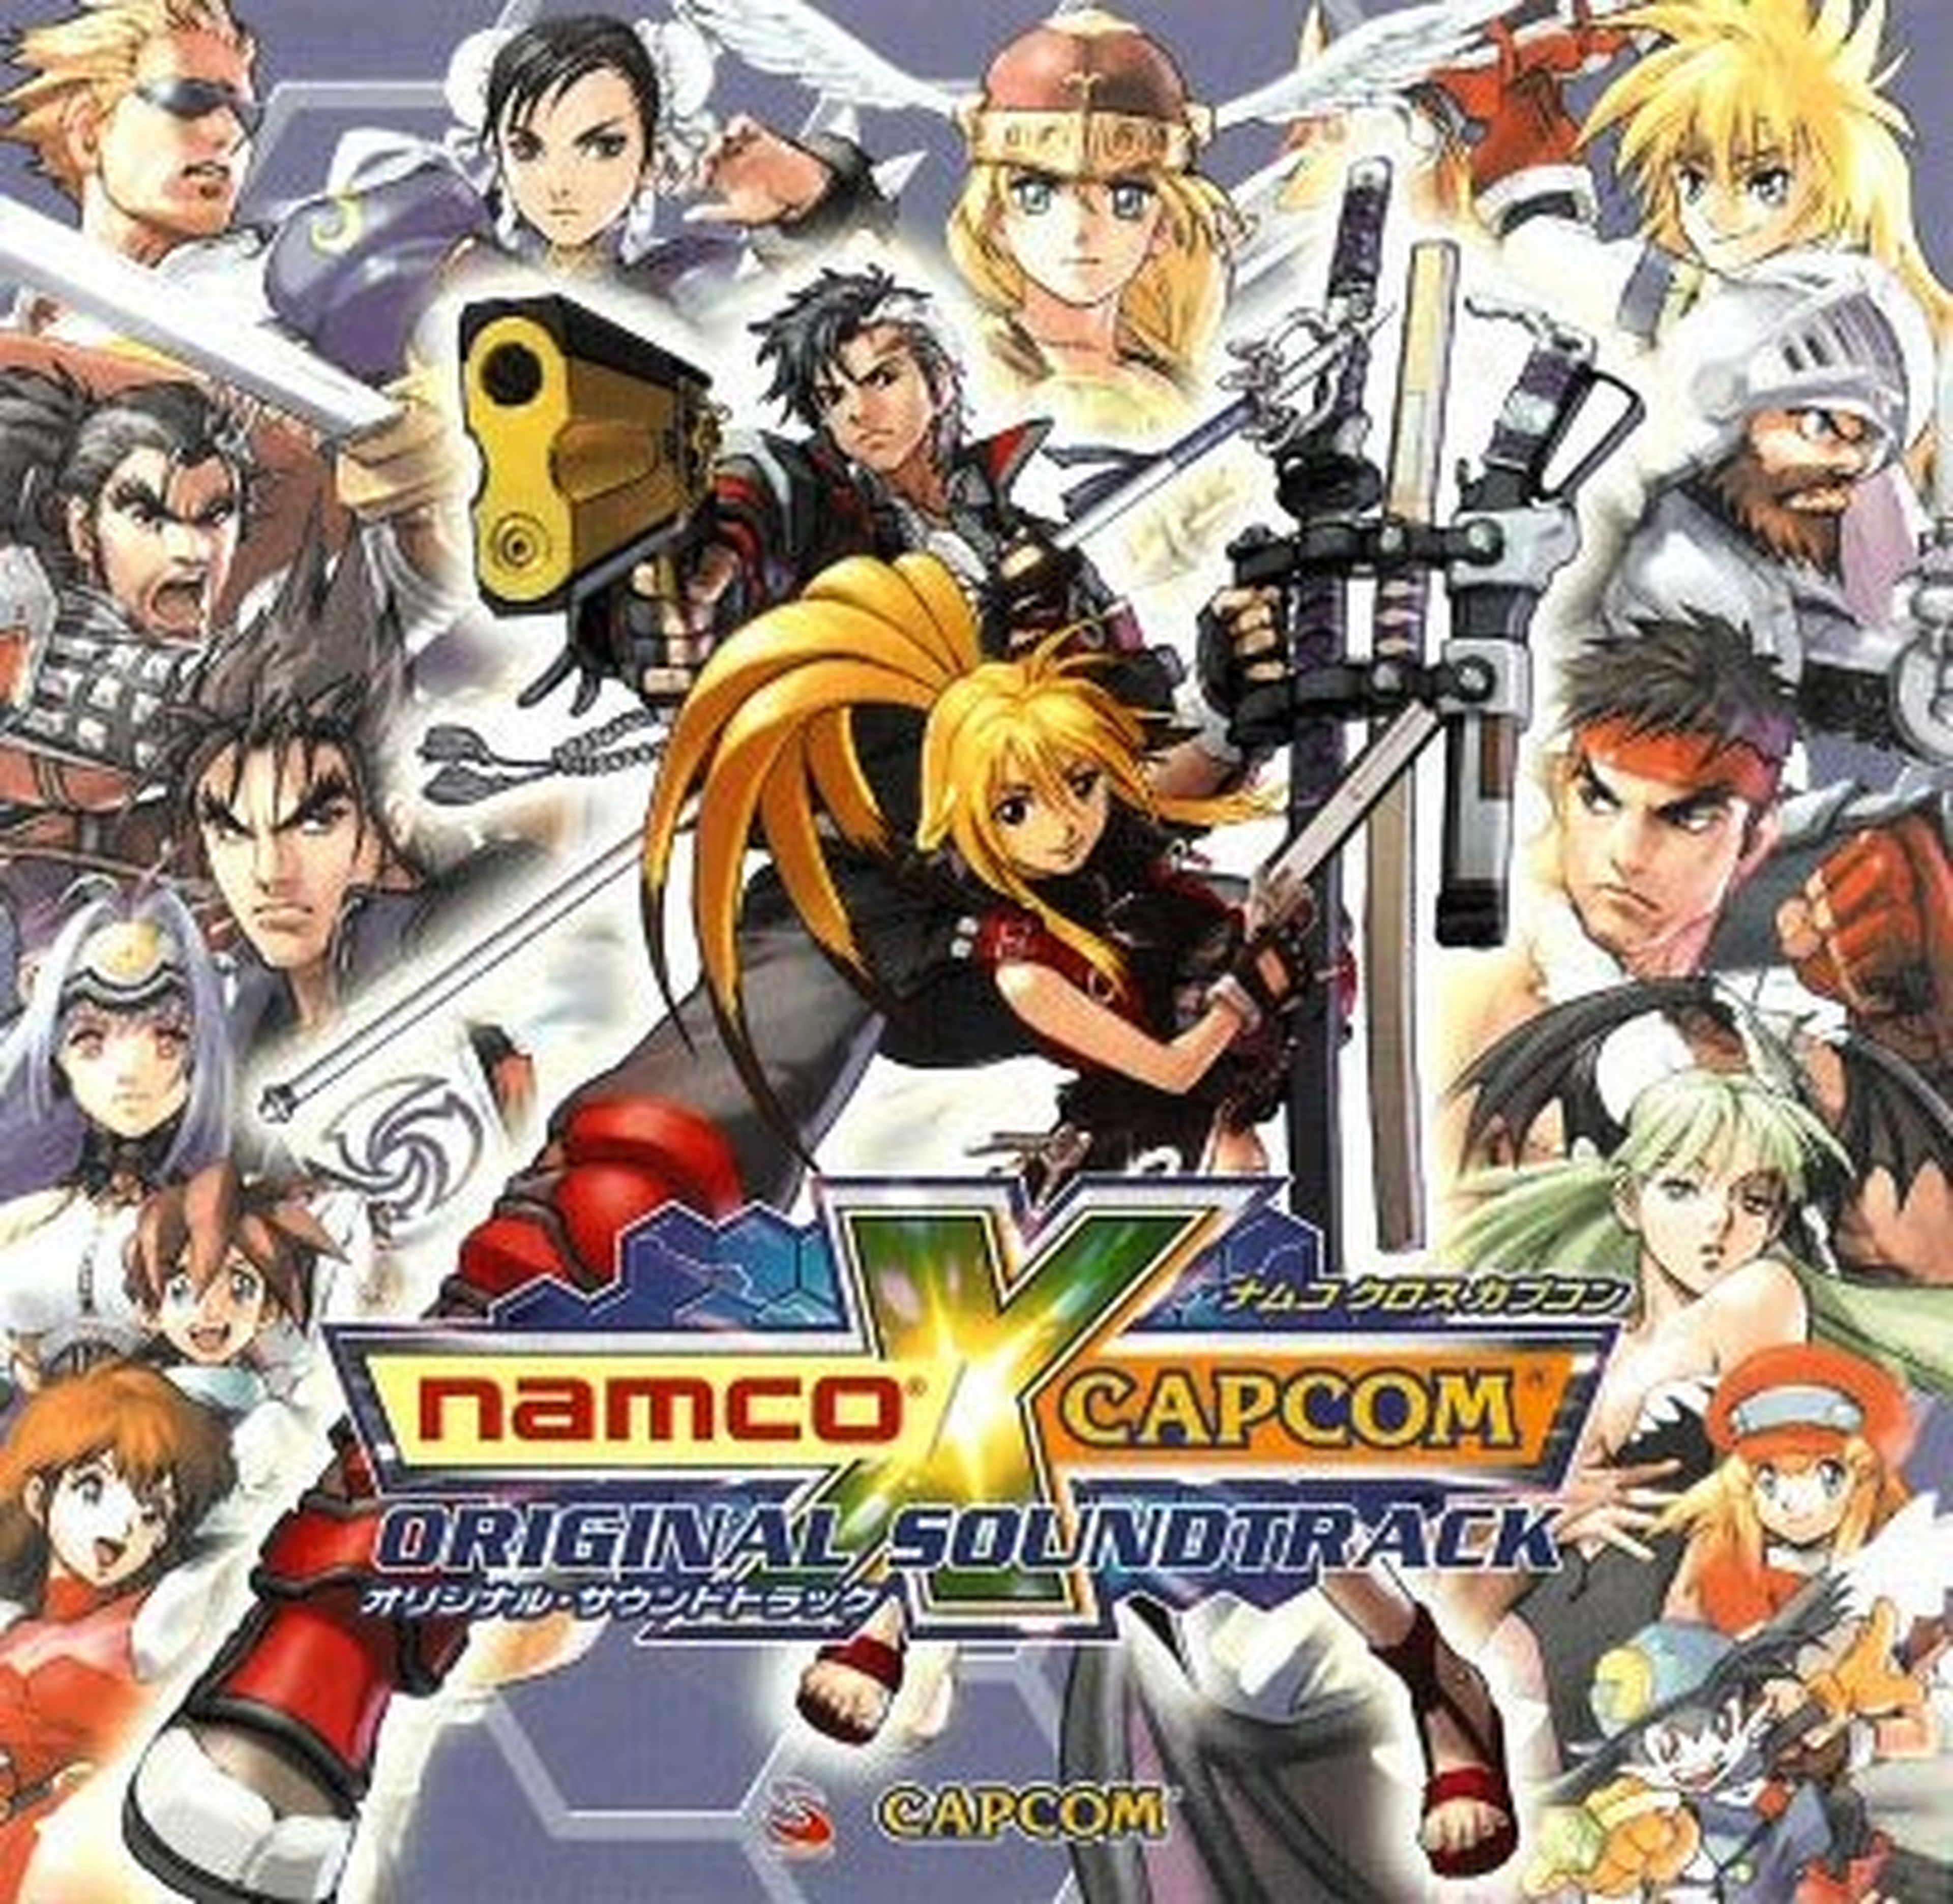 ¿Namco vs Capcom y Capcom vs Namco?